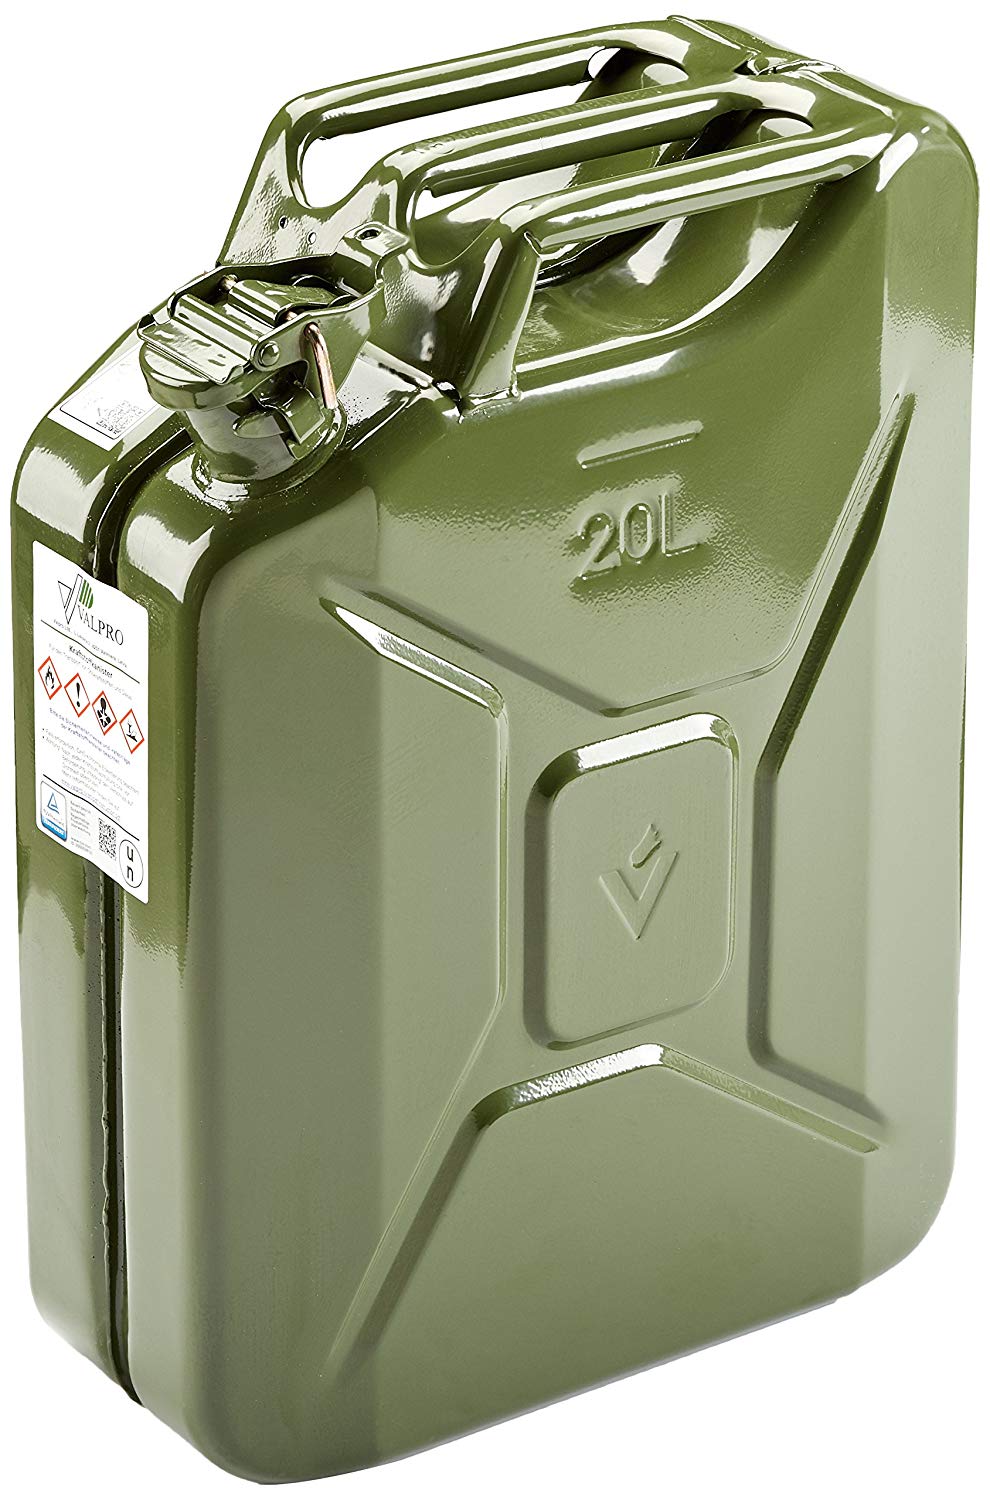 Benzinkanister KKR 20 PE 20 Liter rot Reservekanister mit Ausgiessrohr :  : Auto & Motorrad